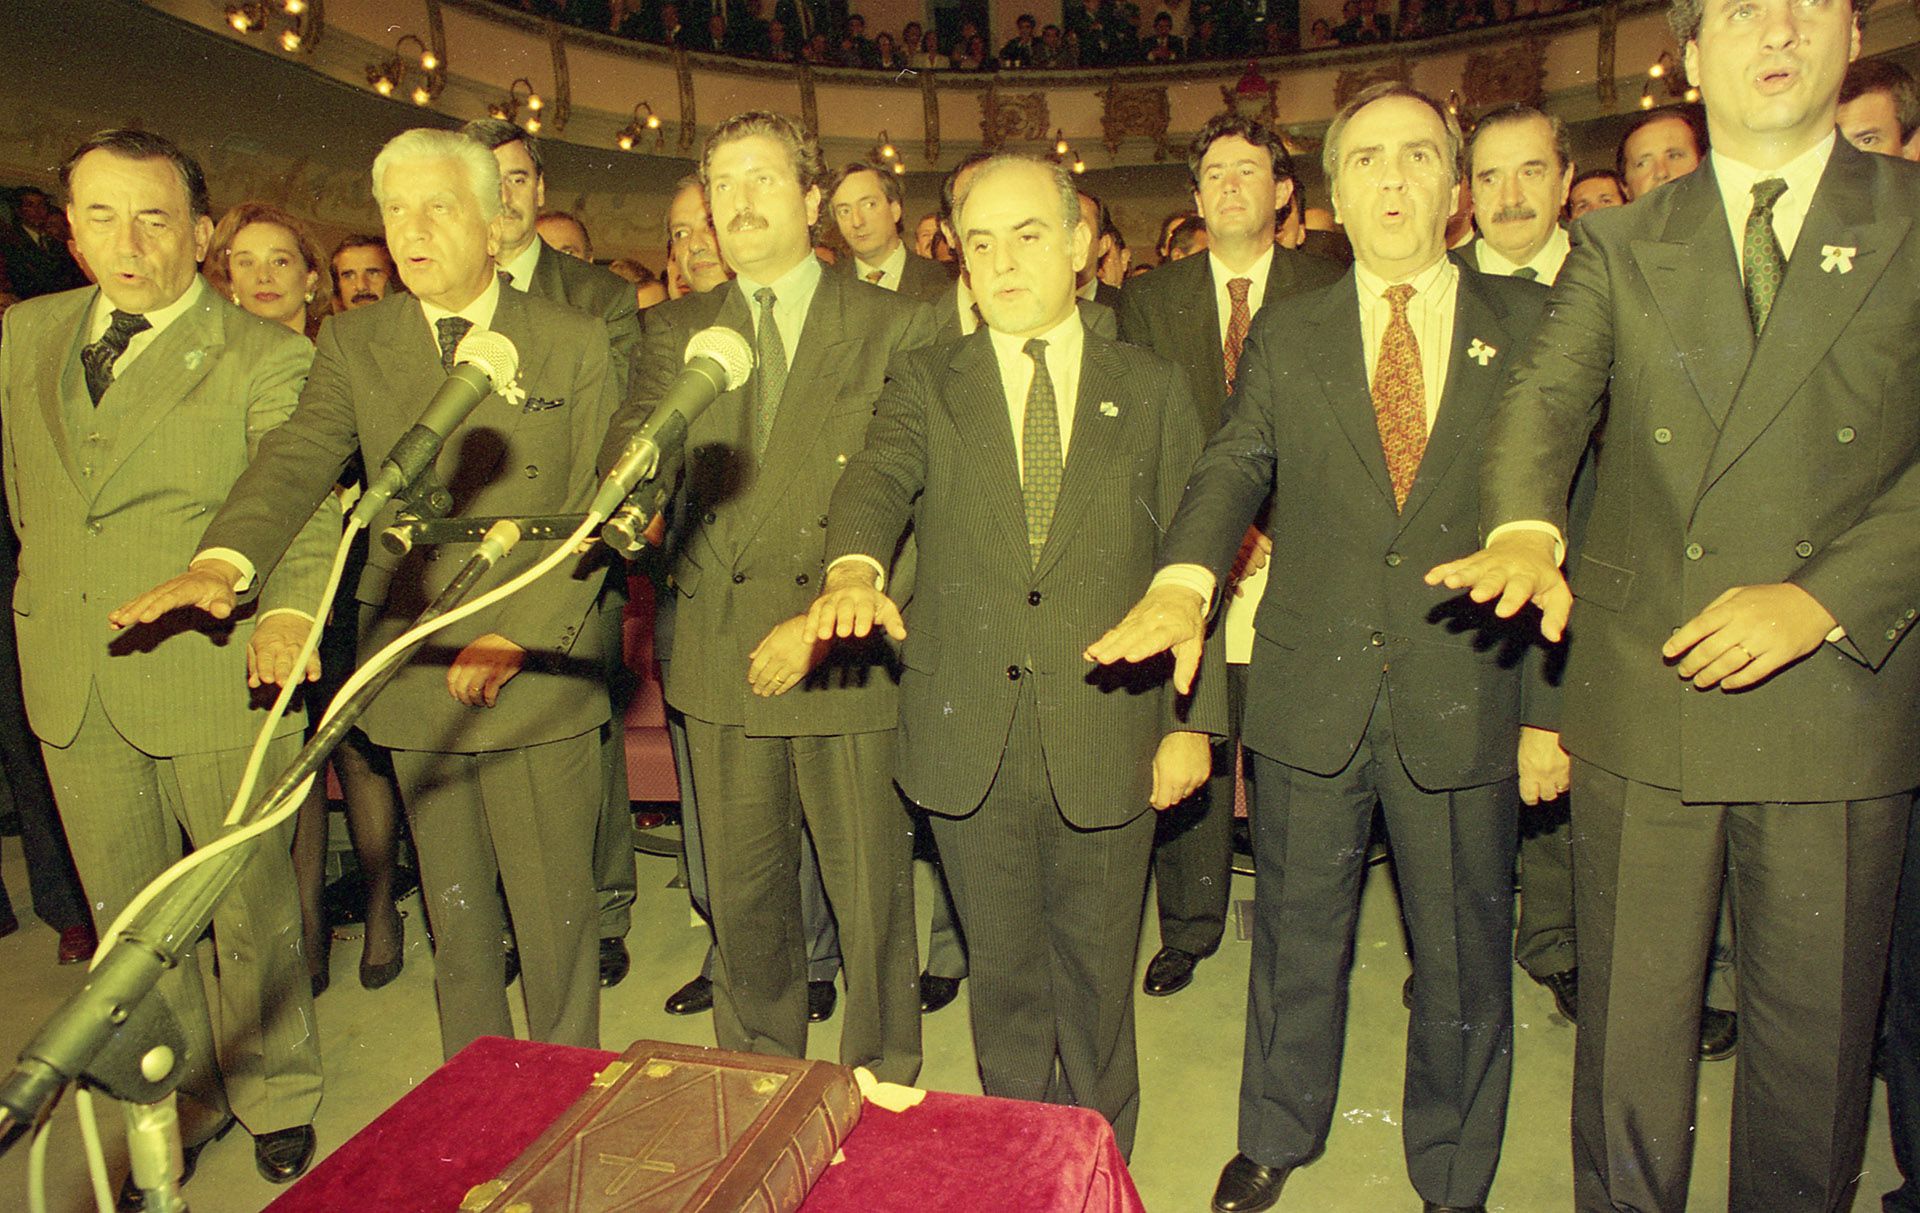 Santa Fe: Finalización de la Asamblea Constituyente. Políticos Jurando. Al centro, Rodolfo Barra. A la izquierda Carlos Grosso y Antonio Cafiero. A la derecha, Juan Pablo Cafiero